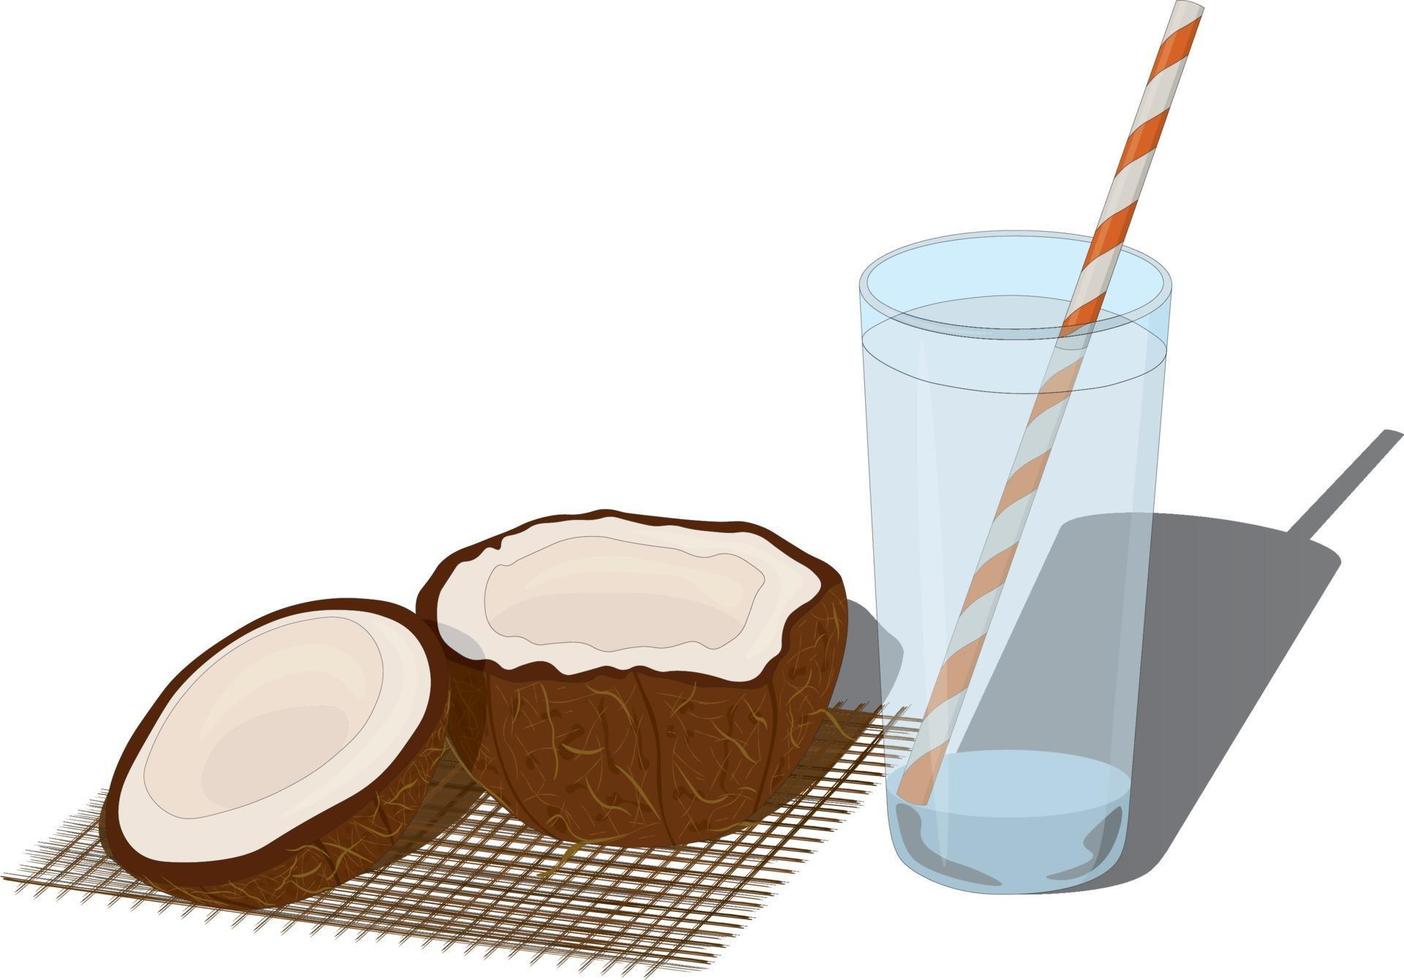 glas vers kokossap water en gesneden kokos vector